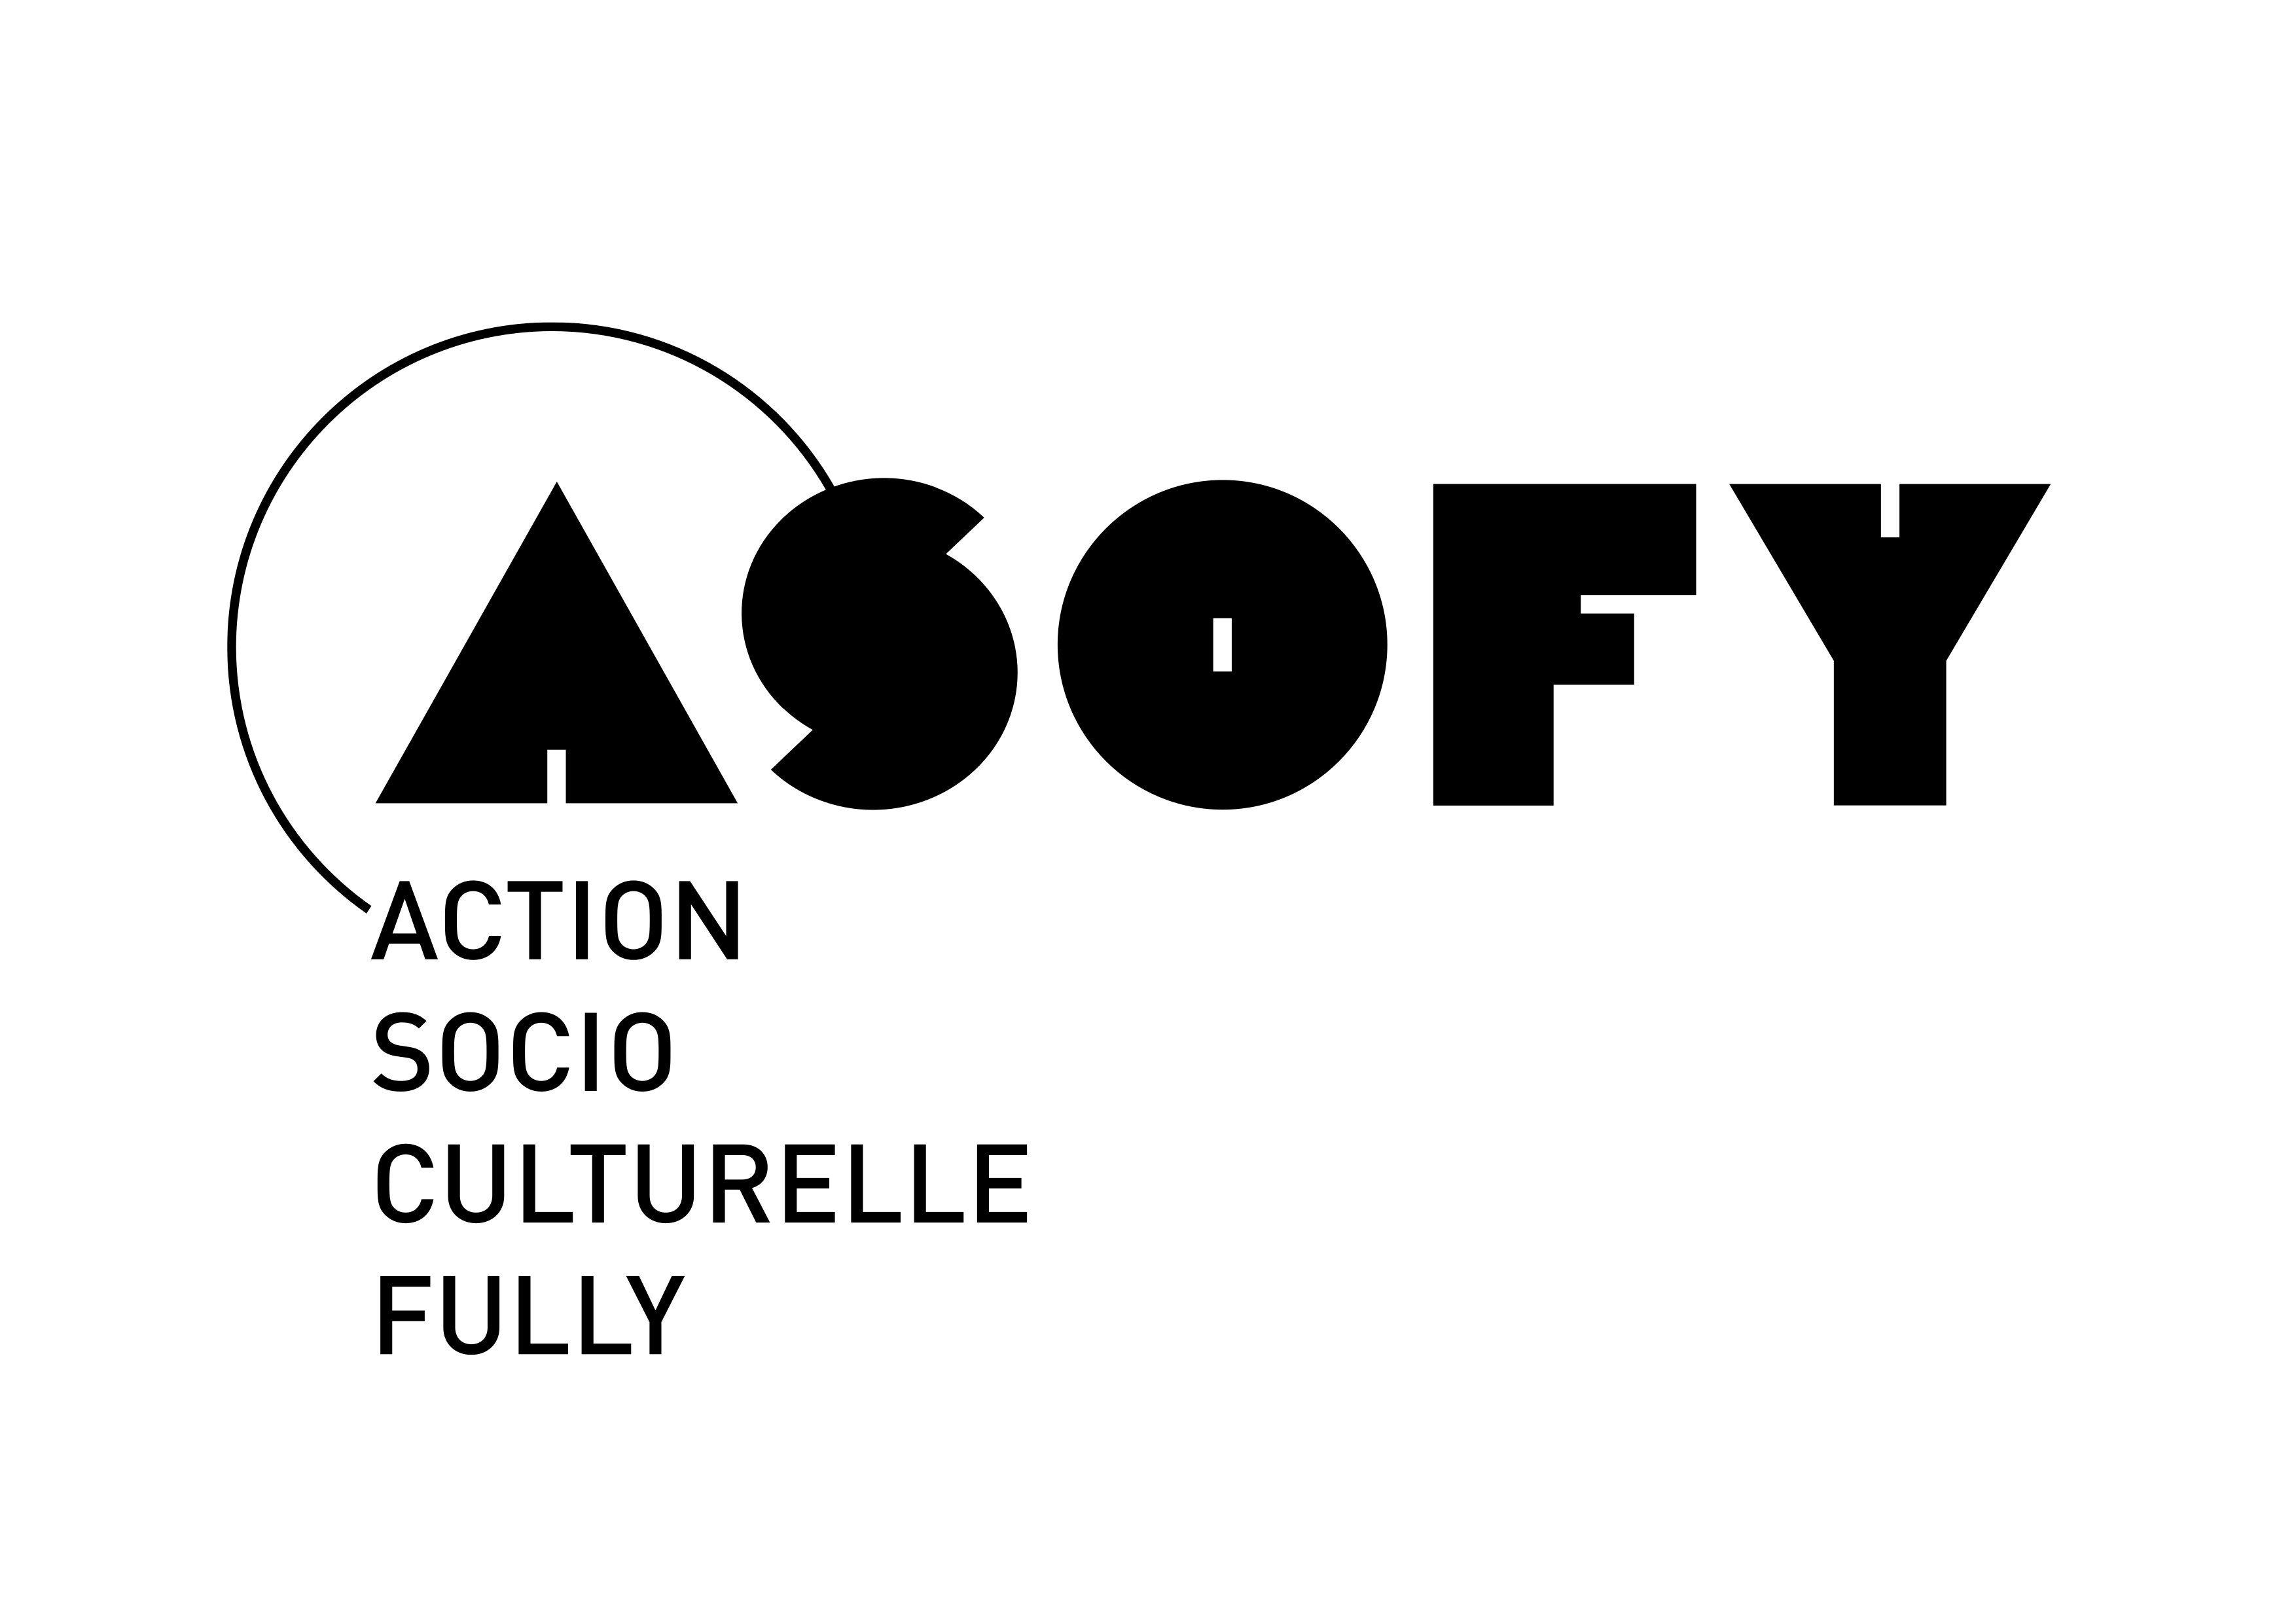 AsoFy